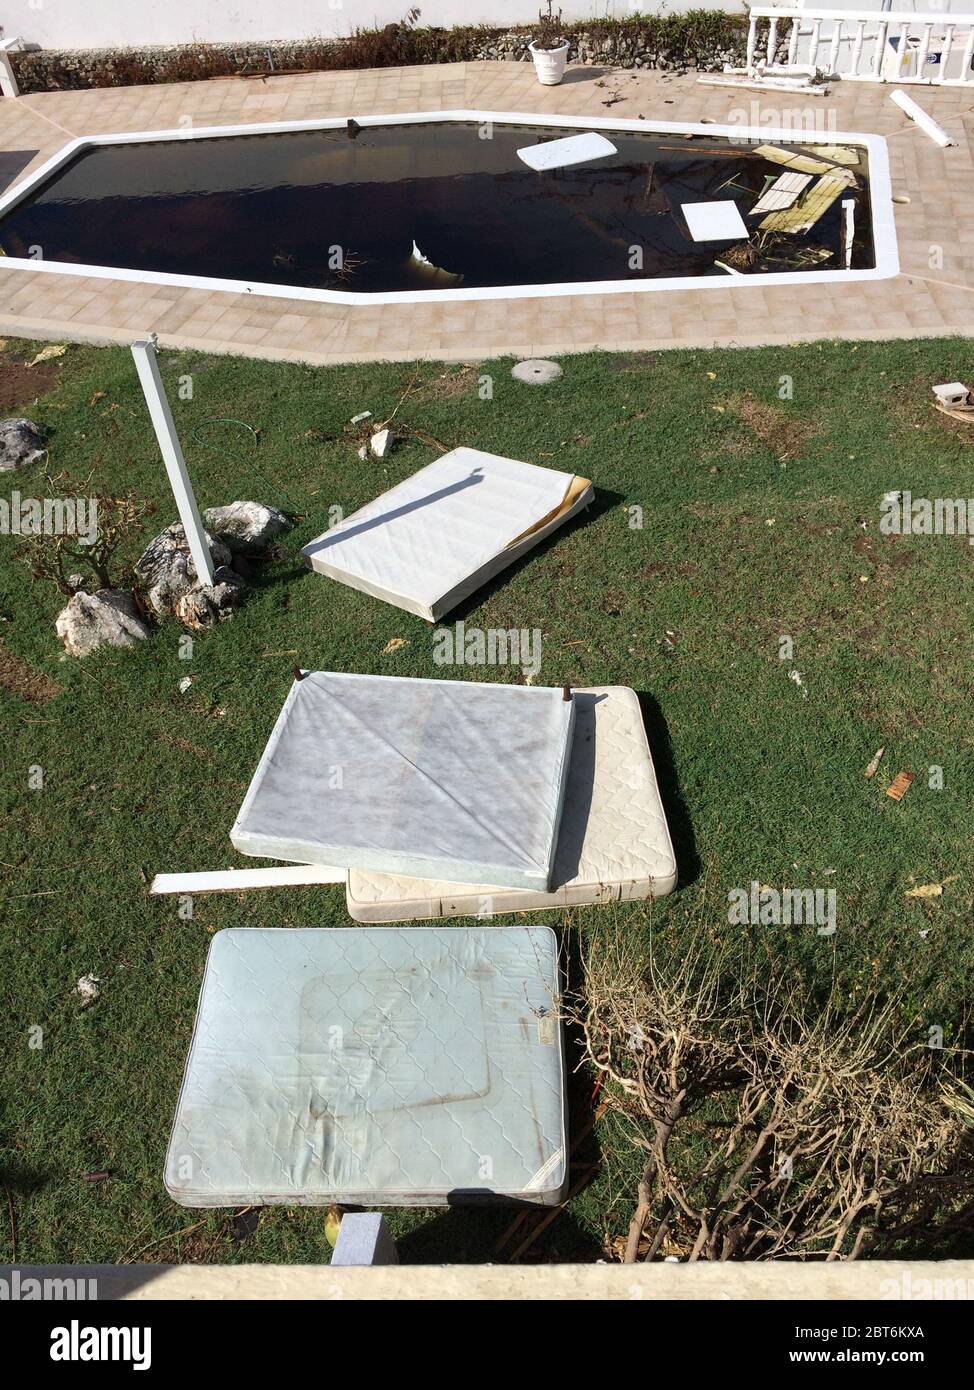 Matelas endommagés et piscine sale, le nettoyage des ménages commence après le passage du grand ouragan Irma sur Sint Maarten en septembre 2017 Banque D'Images